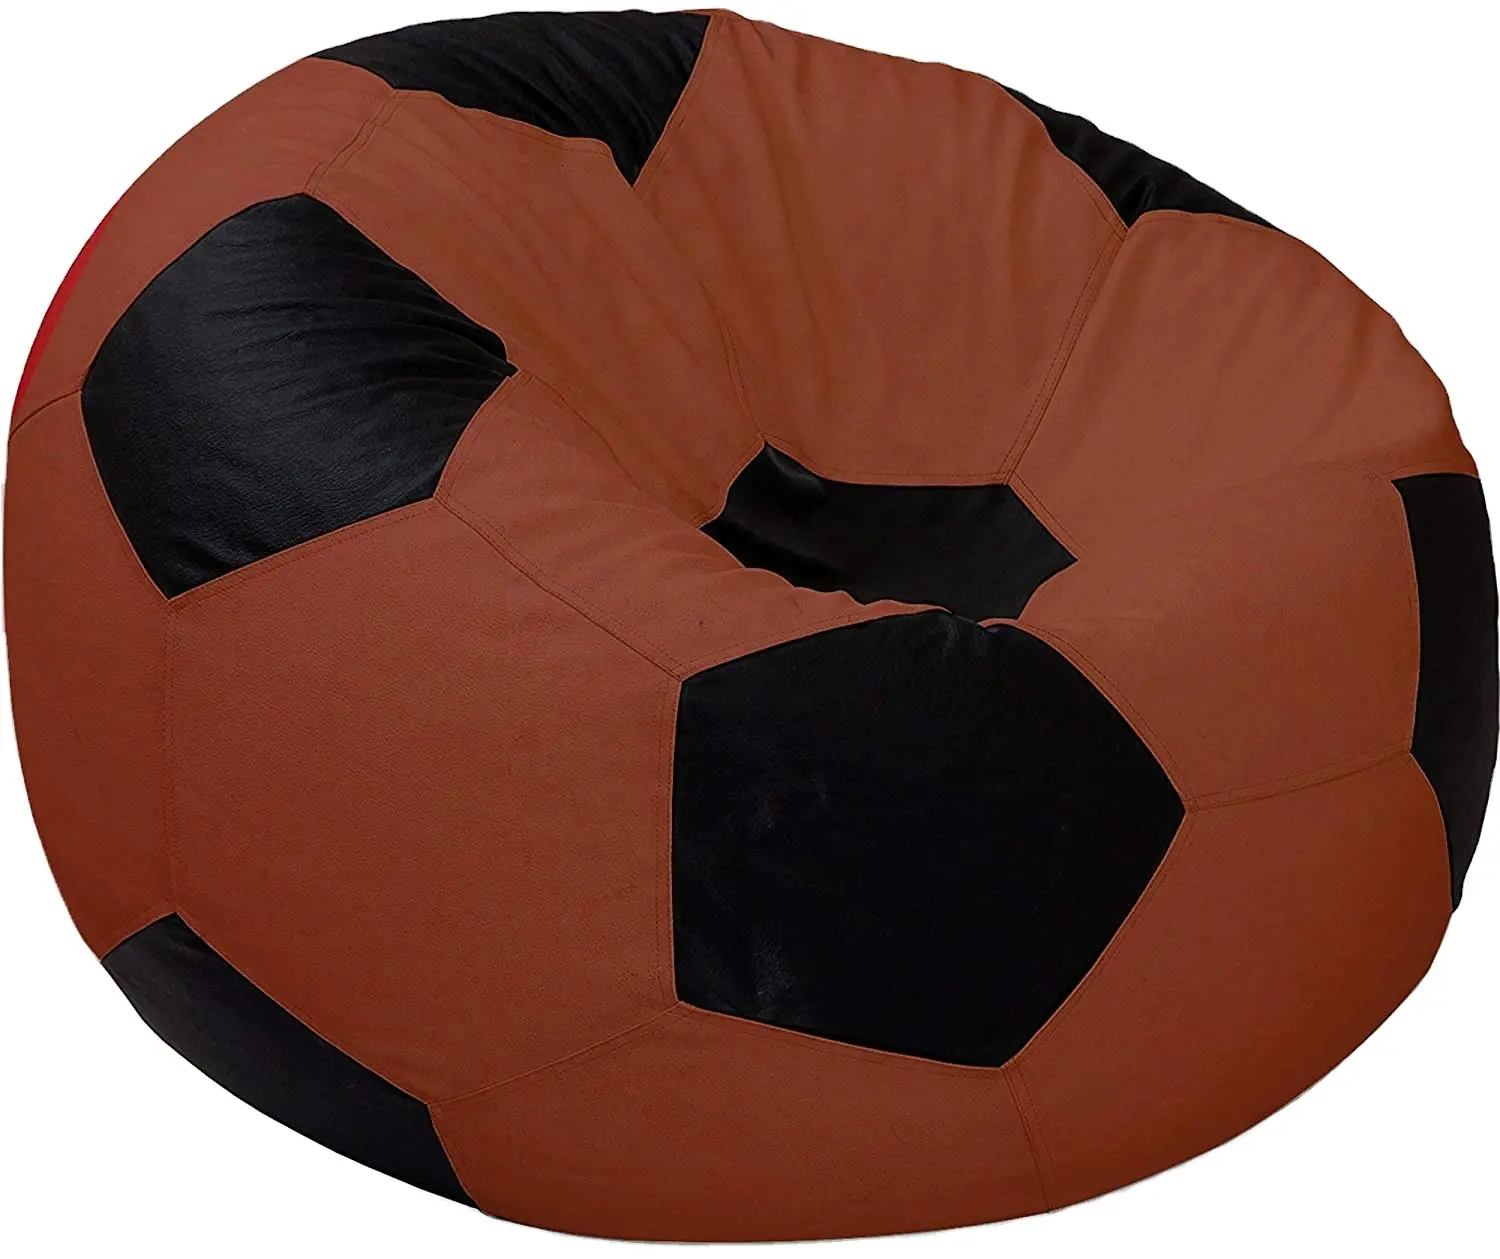 (Kein Füllstoff) Bequemer Sitzsack bezug im Fußball design, mehrfarbiger Sitzsack bezug aus PU-Leder für Kinder Erwachsene